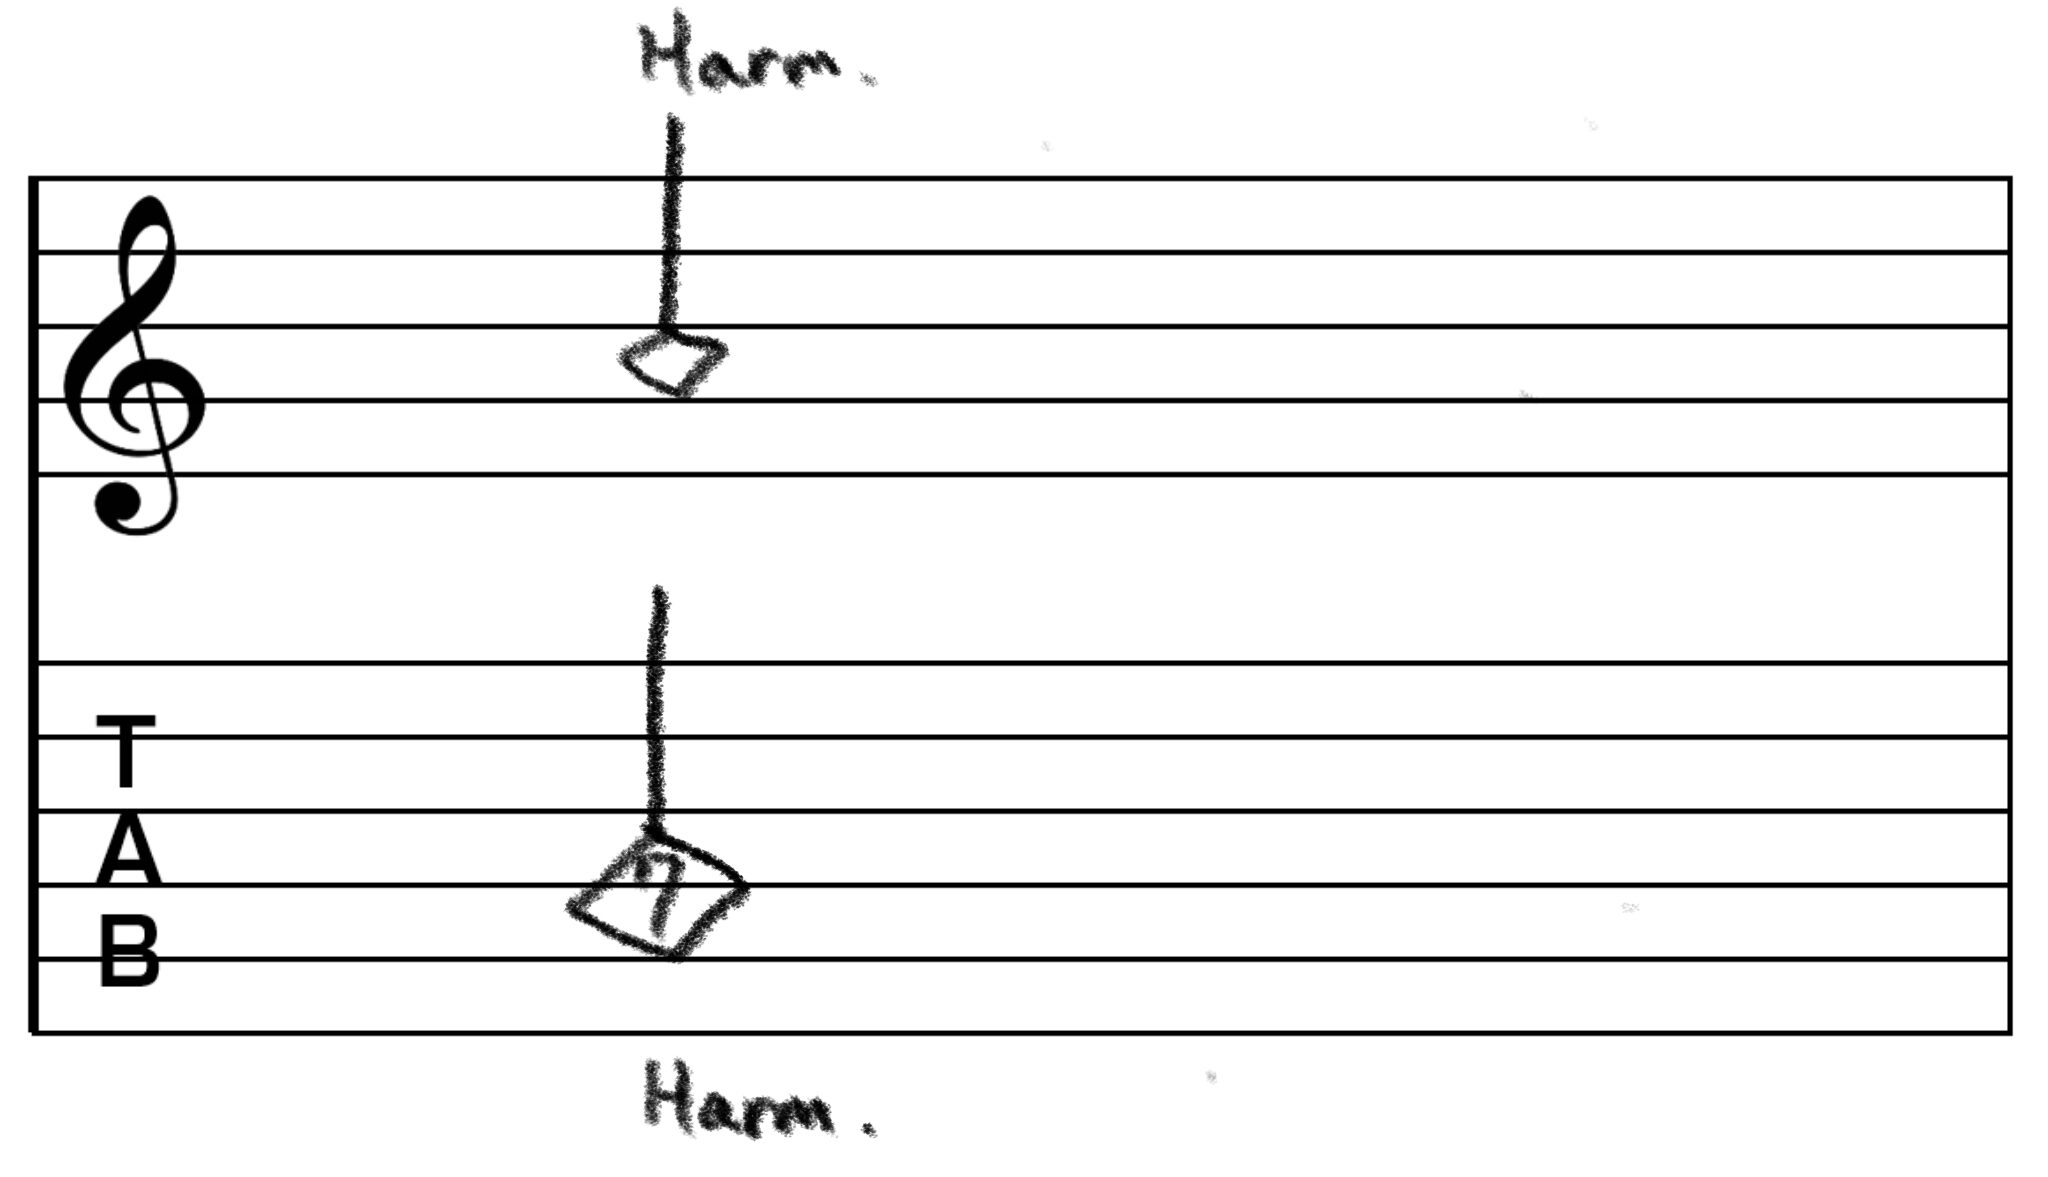 ナチュラルハーモニクスのTAB譜です。 4弦7フレットでナチュラルハーモニクスを鳴らすよう指示しています。